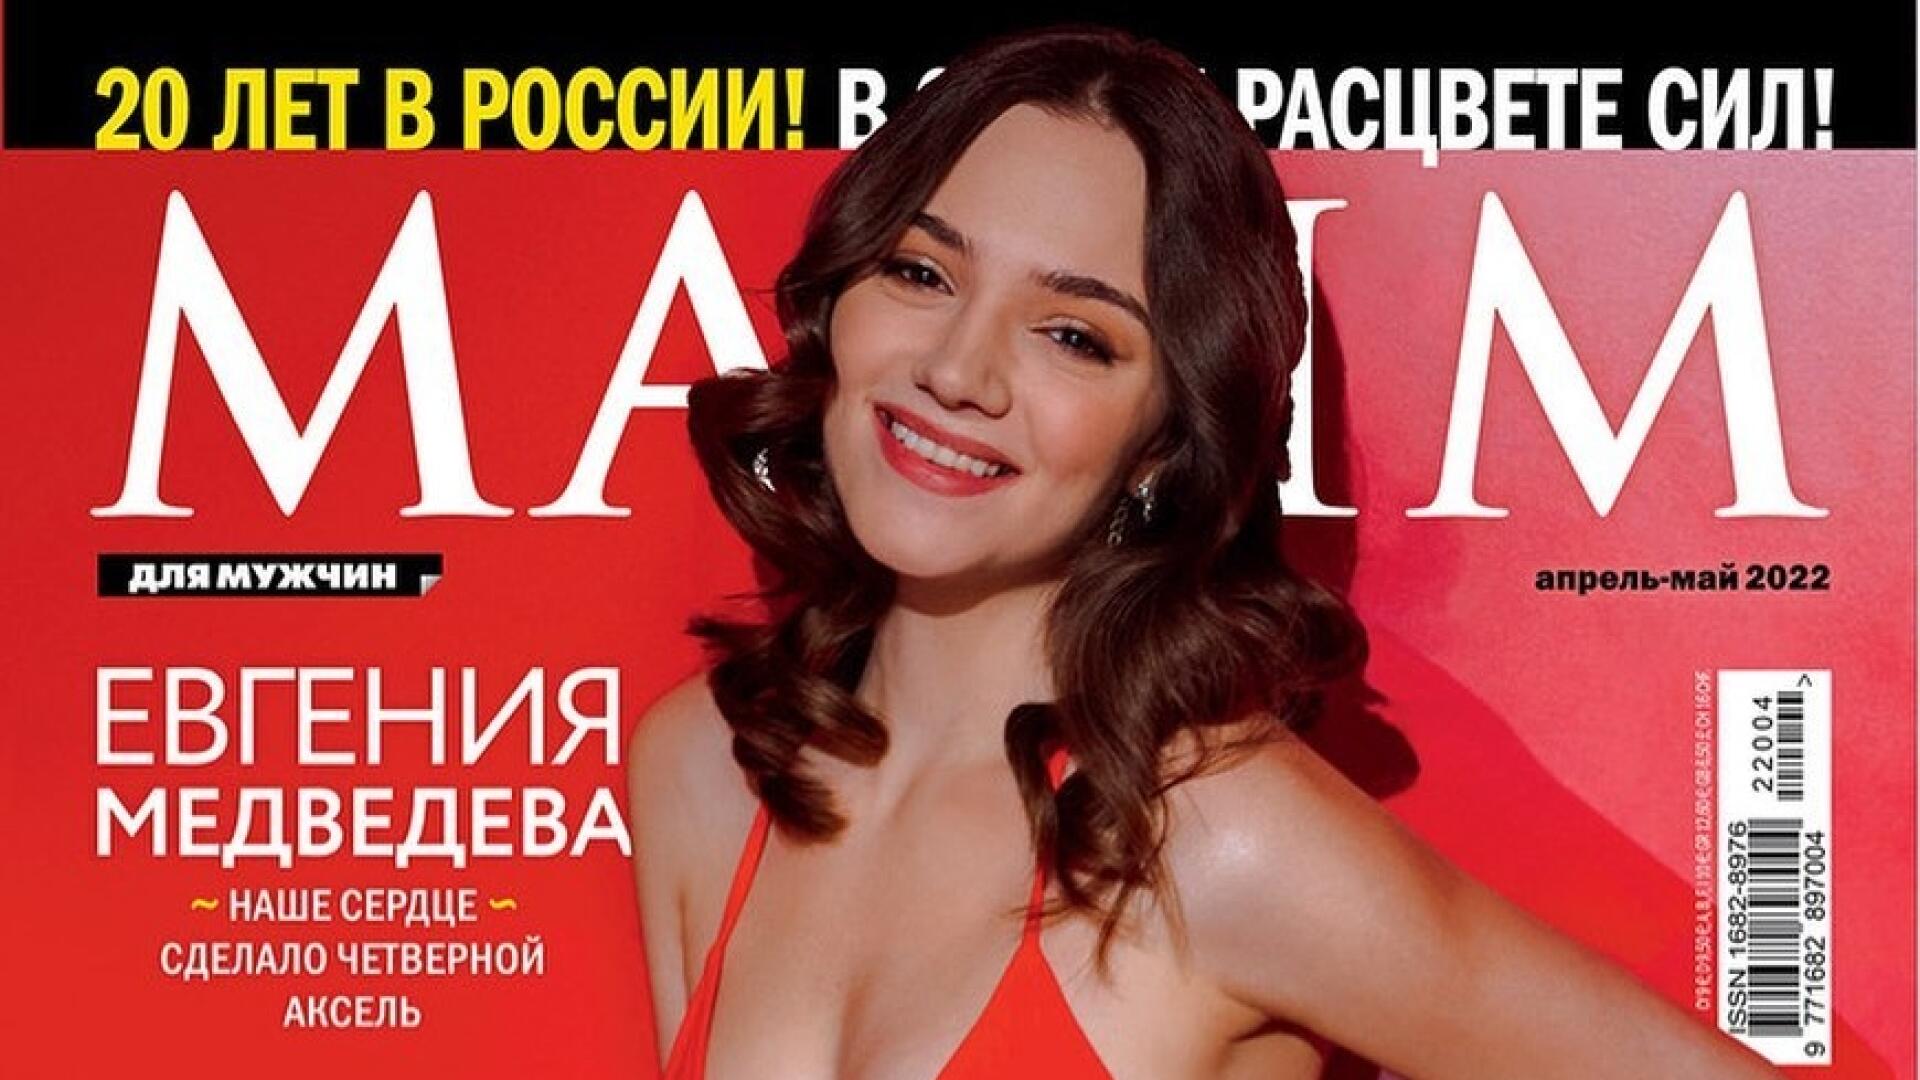 Евгения Медведева журнал Максим 2022